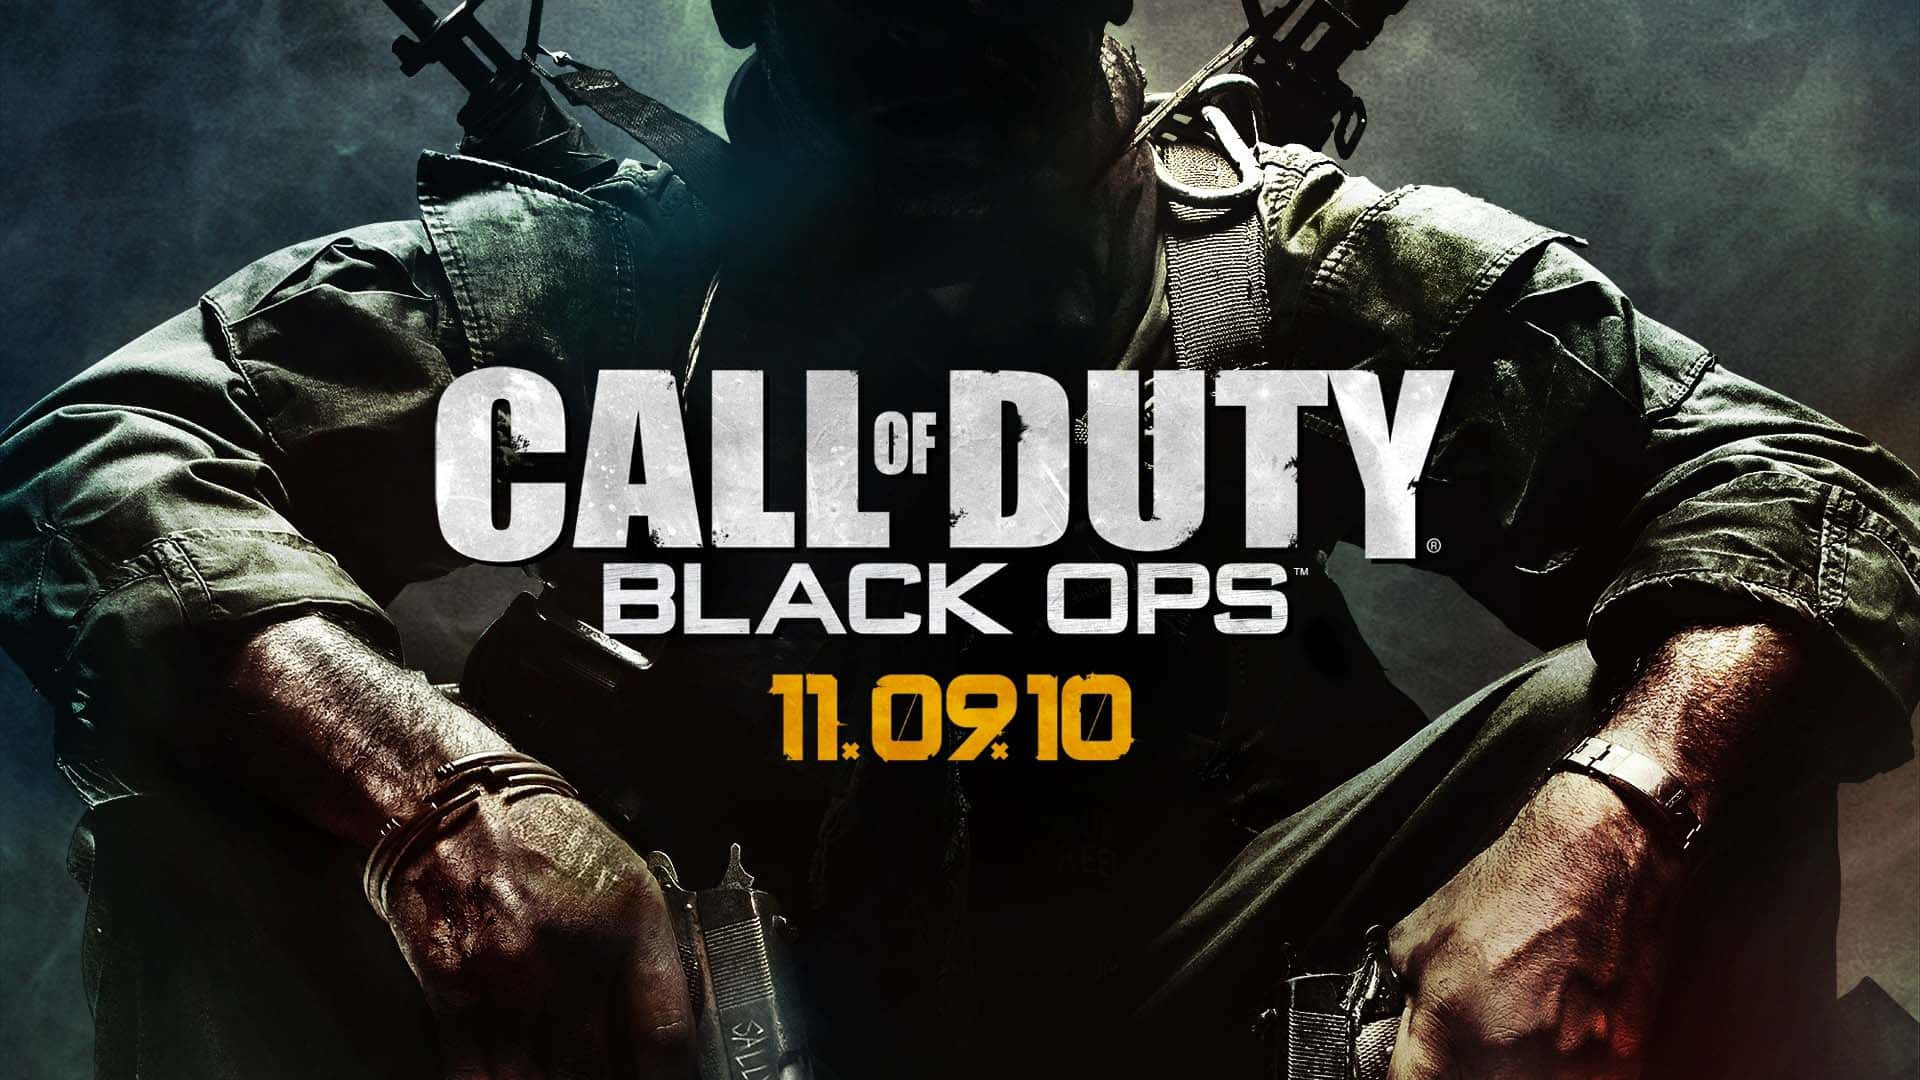 Sumérgeteen La Acción Con Call Of Duty Black Ops. Fondo de pantalla